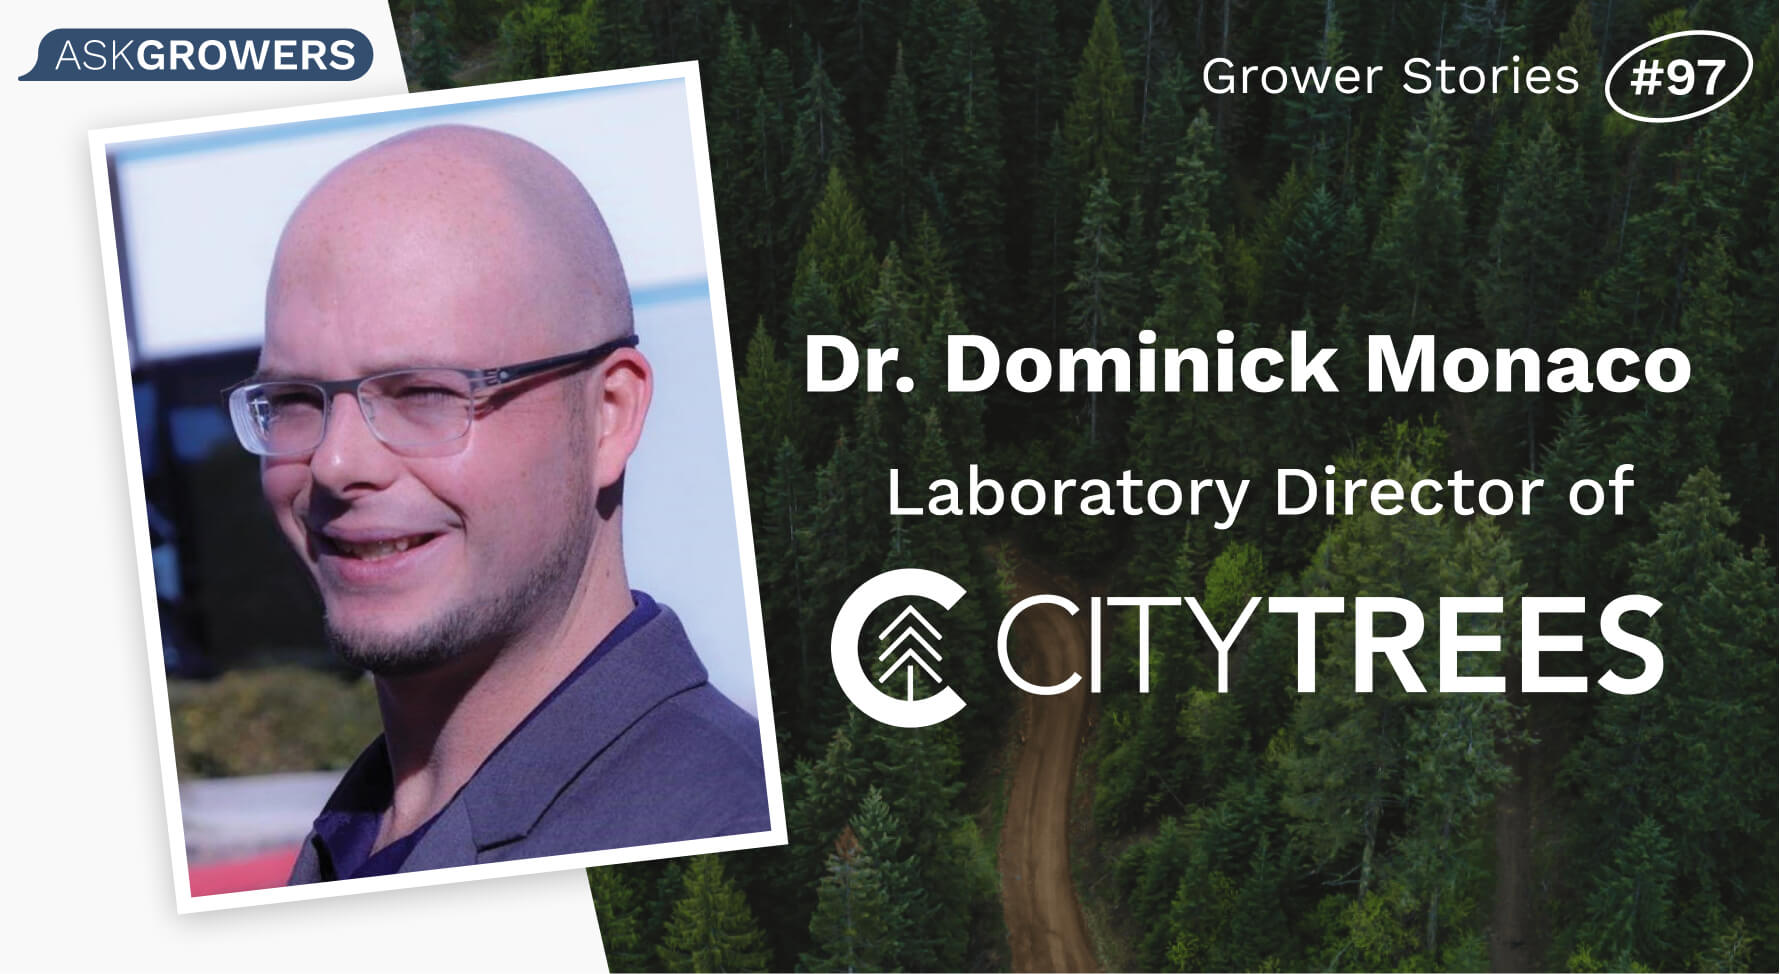 Grower Stories #97: Dr. Dominick Monaco